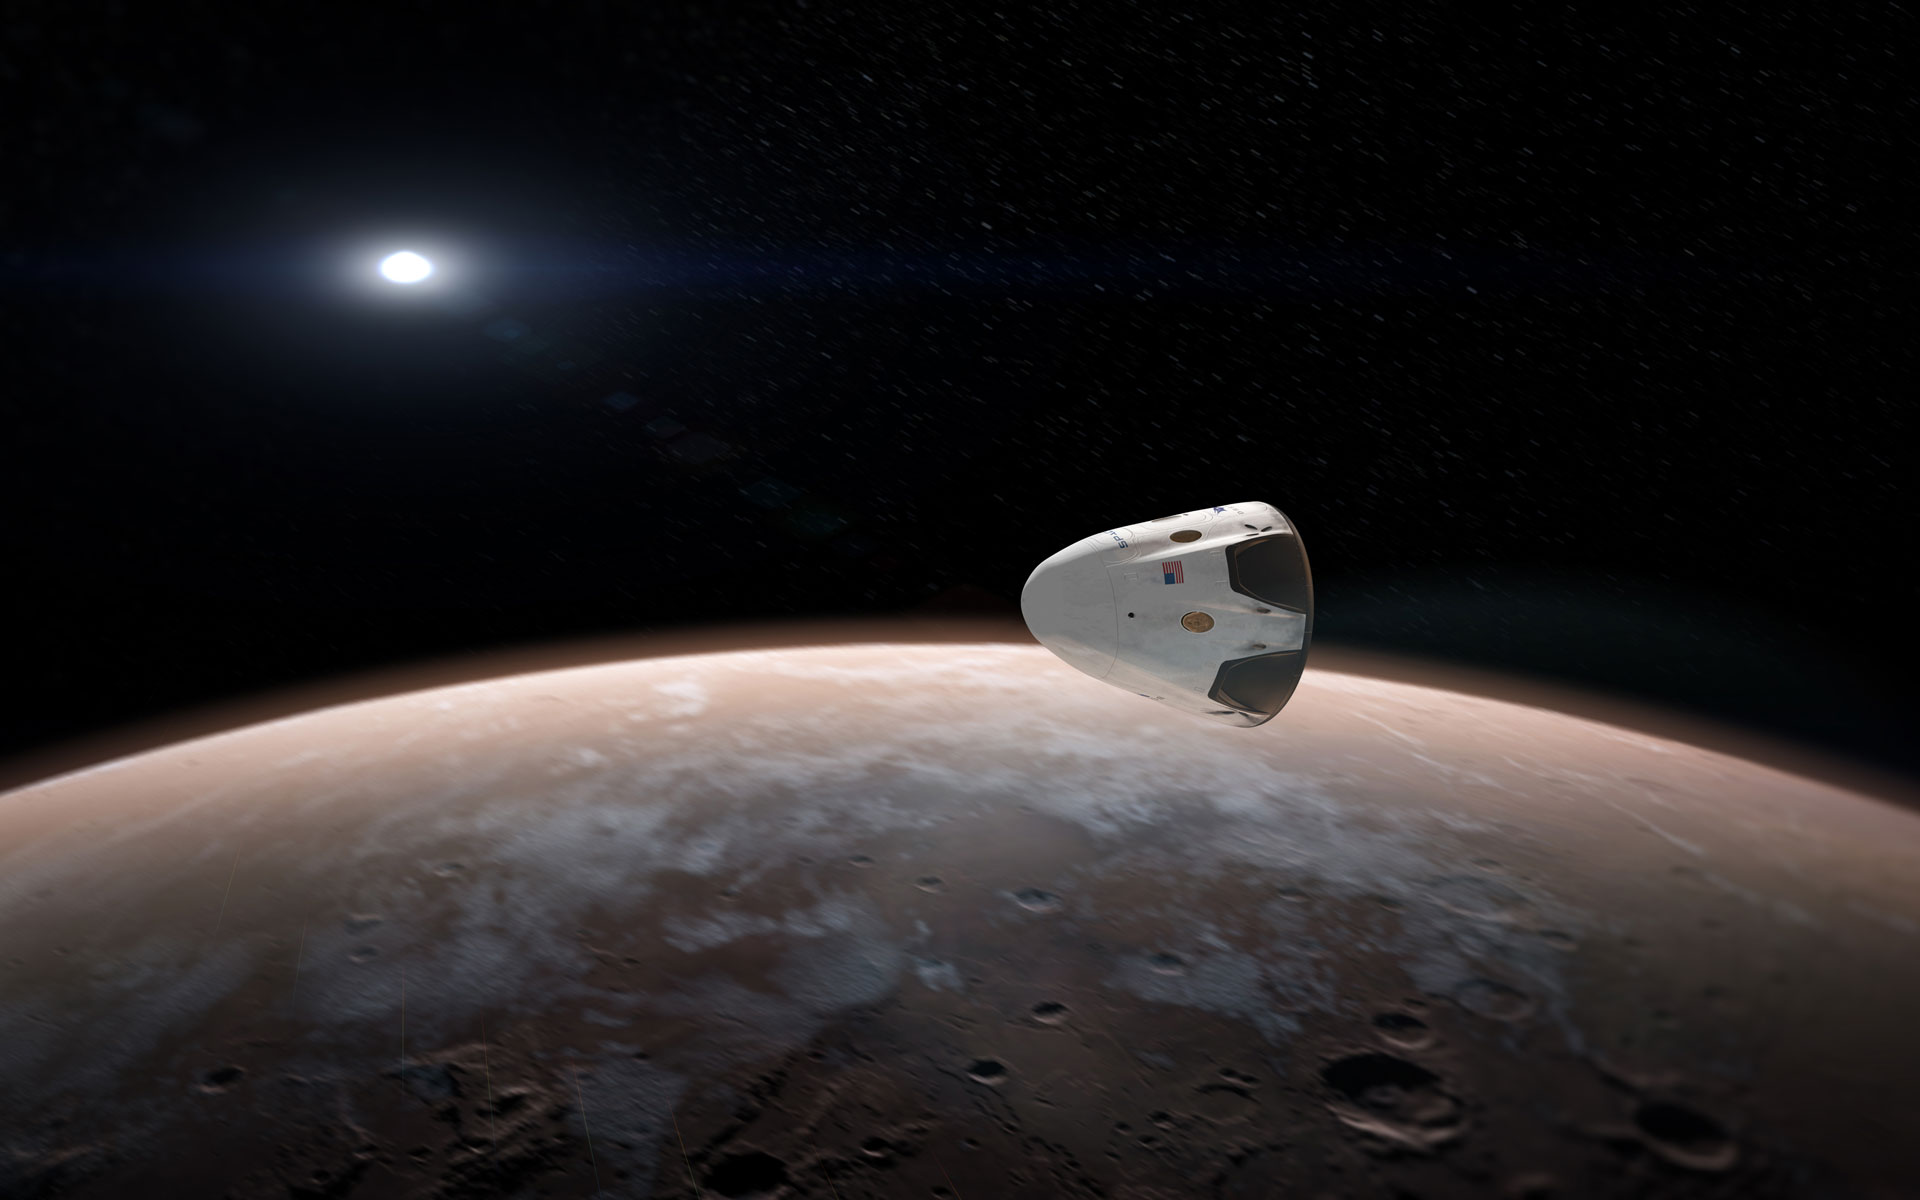 Khám phá những hình ảnh đầy kinh ngạc của tàu vũ trụ SpaceX Dragon! Cùng chiêm ngưỡng tàu vũ trụ hiện đại nhất thế giới này trên không trung và khám phá những phát minh công nghệ mới nhất!